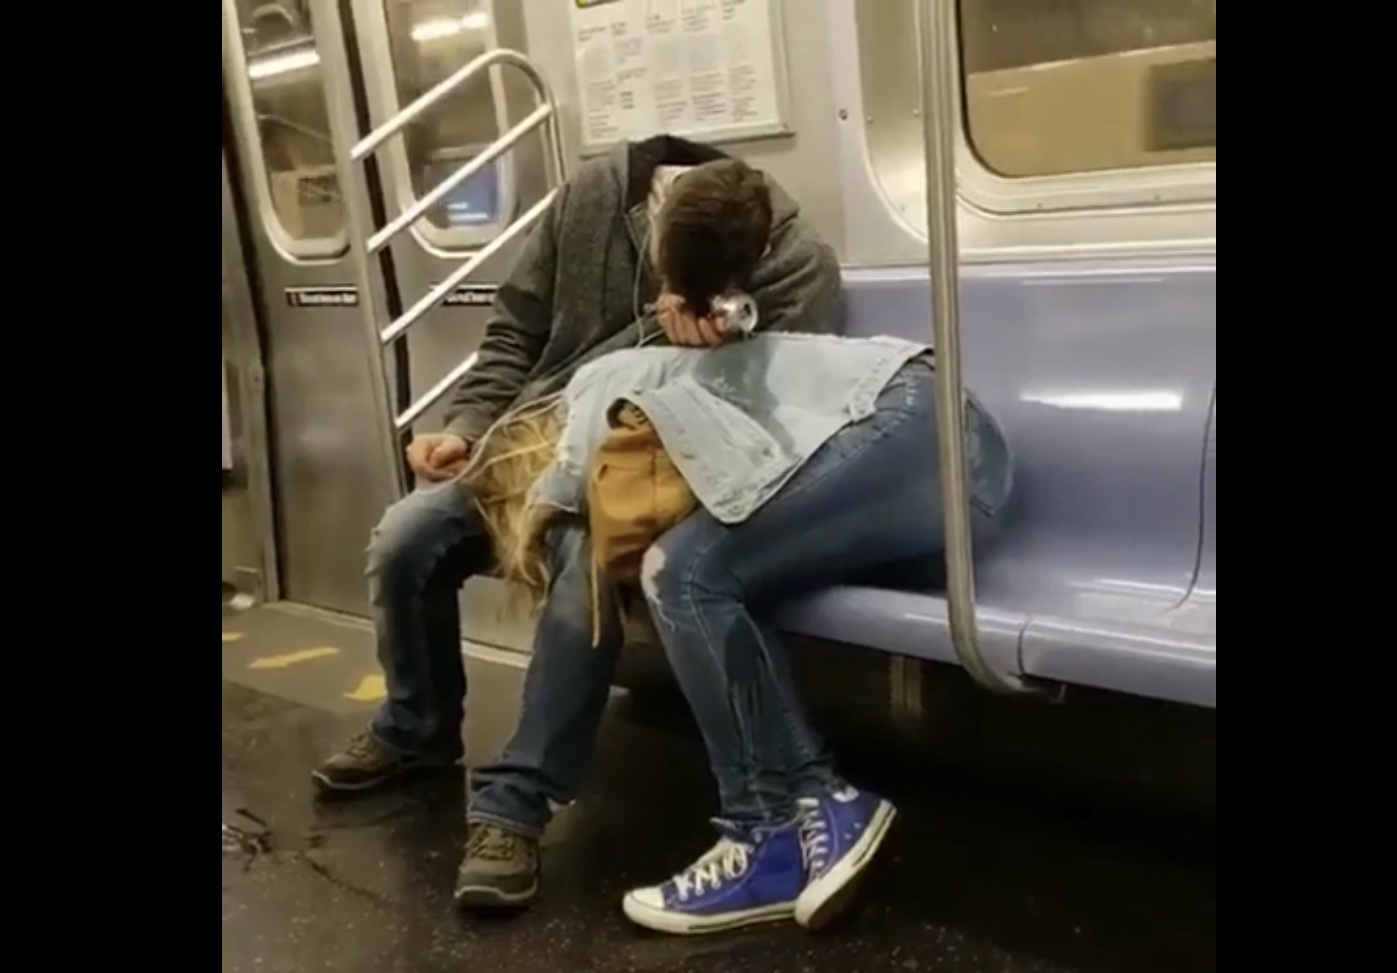 “Як романтично”. У метро зняли сплячого хлопця, який розливає пиво на свою дівчину (ВІДЕО)